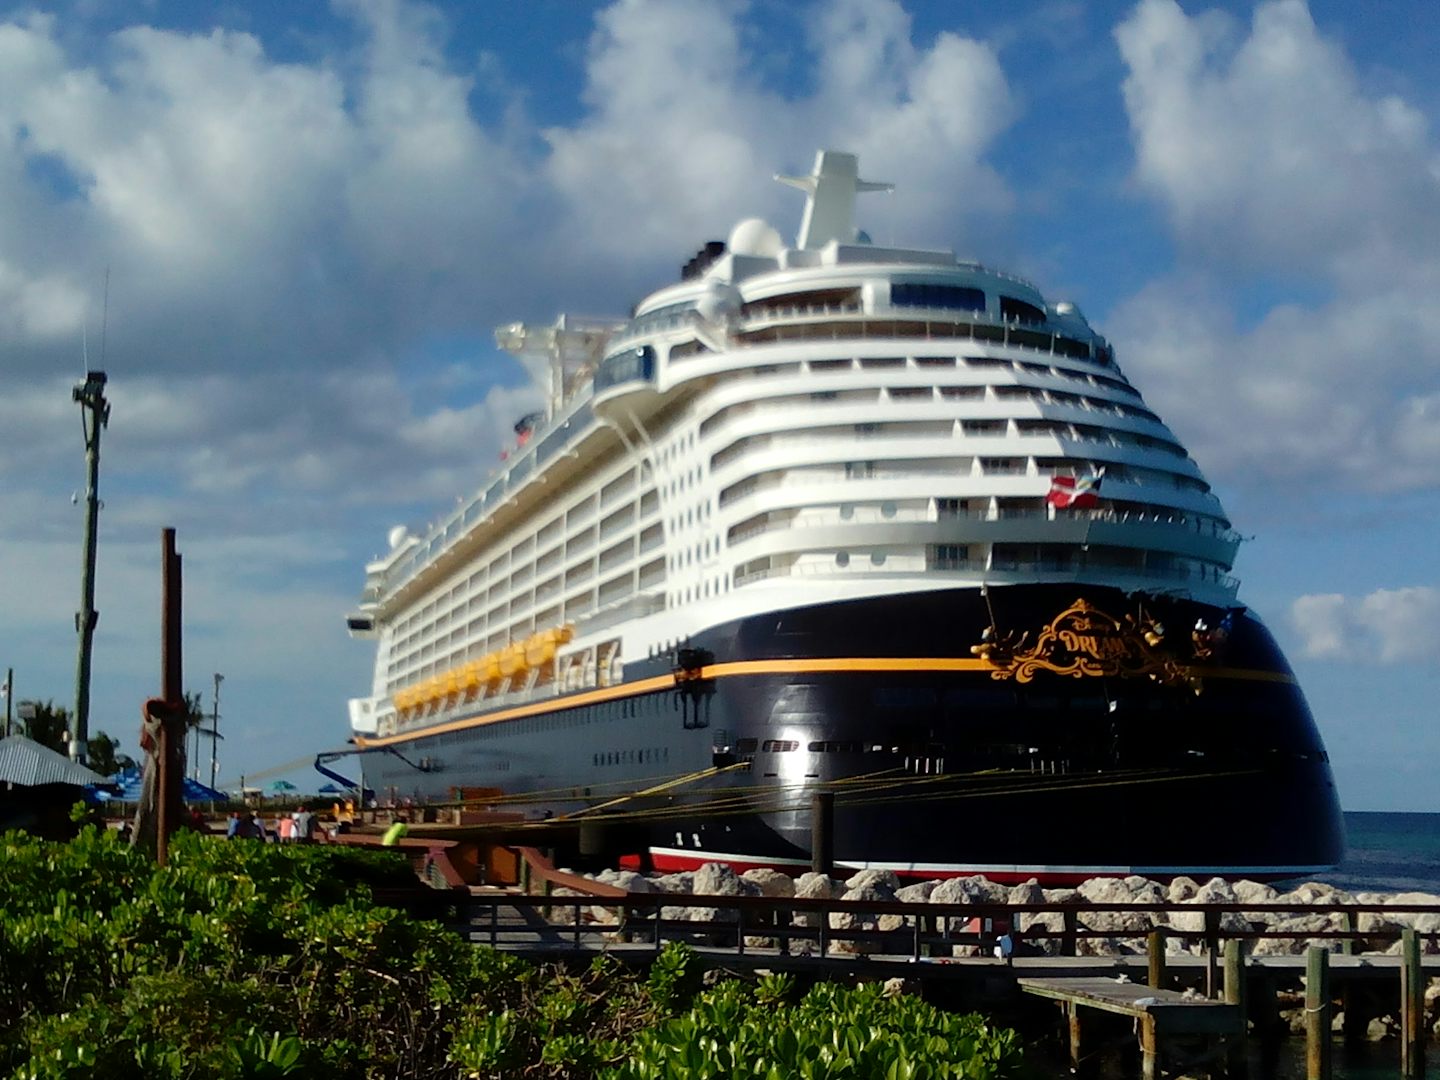 Disney Dream docked at Disneys Castaway Cay